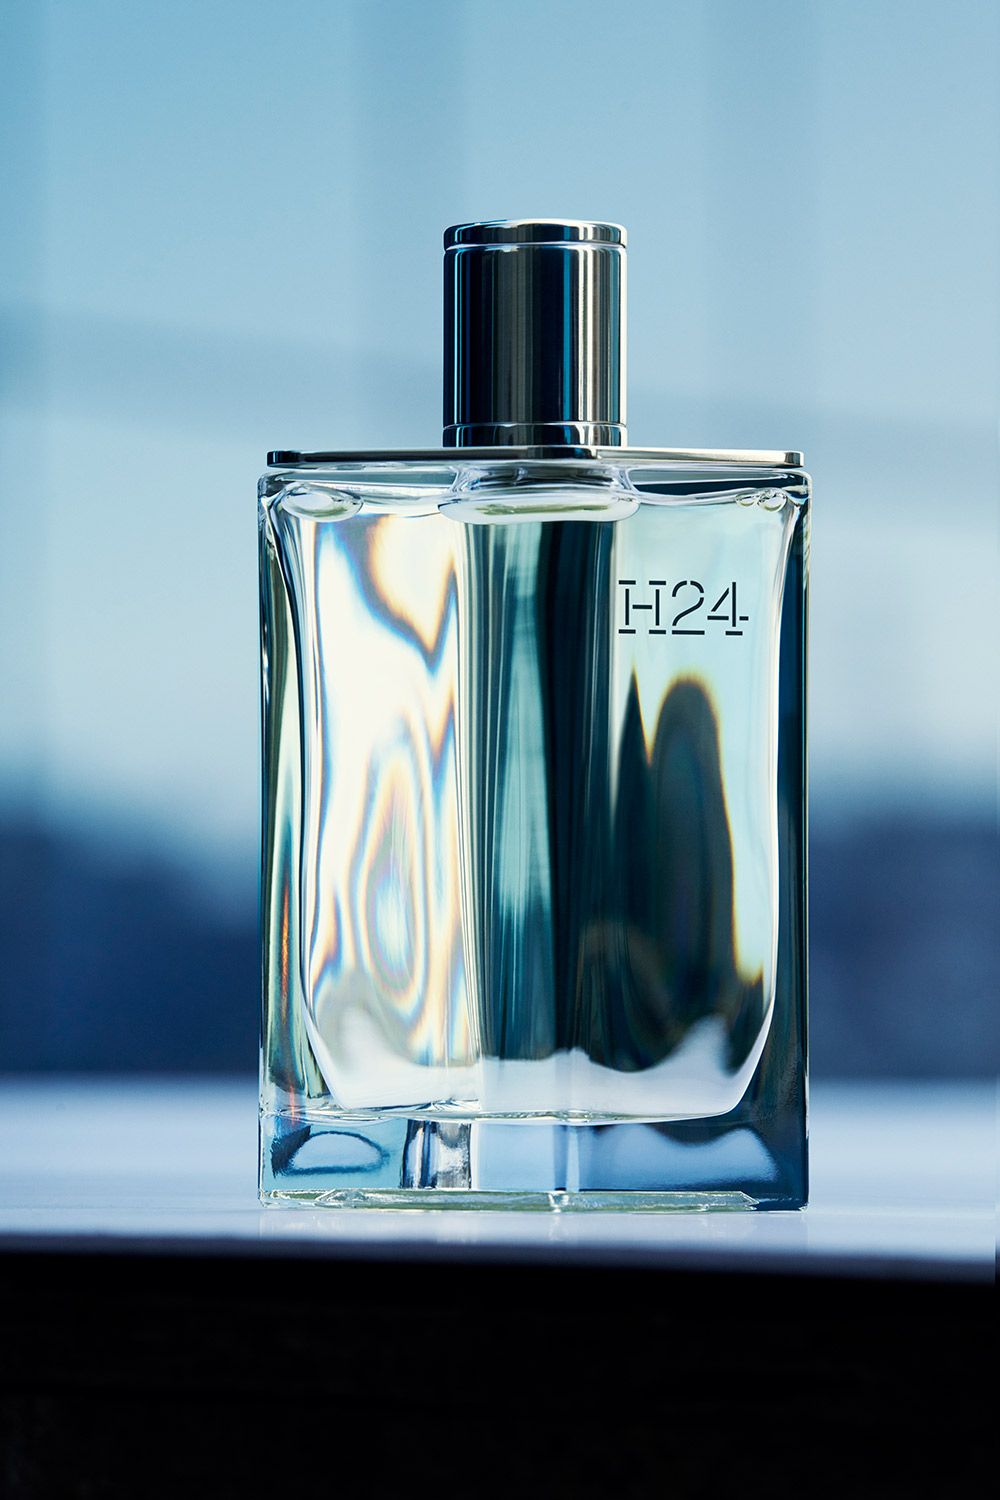 H24 Hermès Cologne - ein neues Parfum für Männer 2021